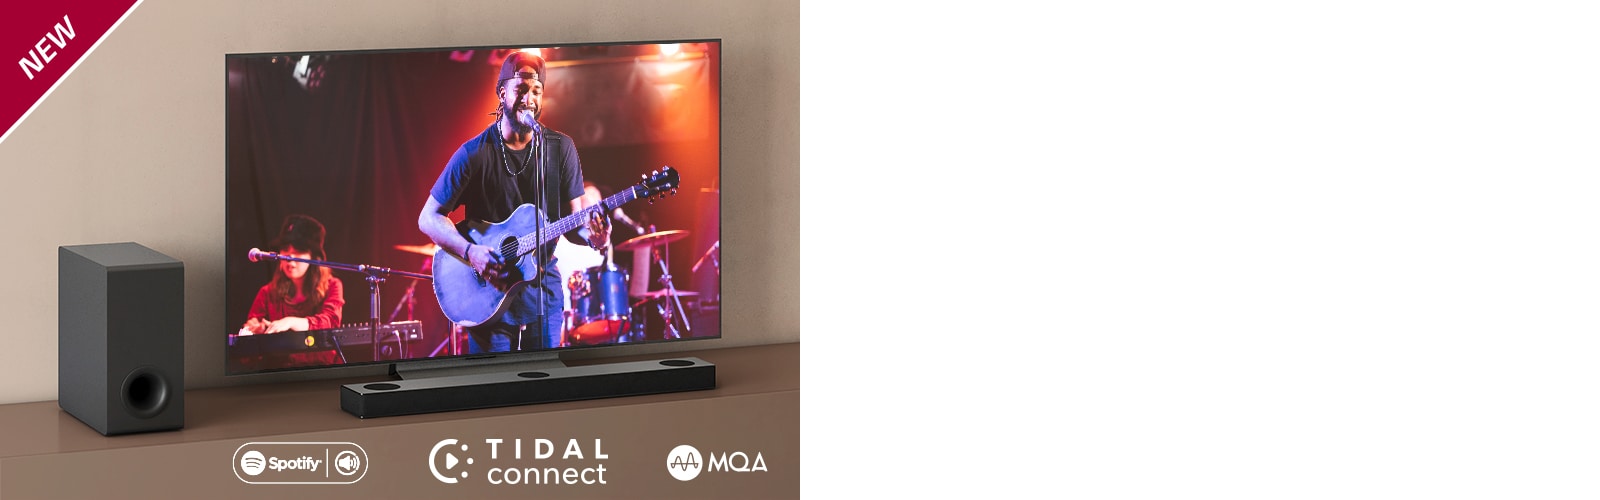 LG TV on asetettu ruskealle hyllylle, ja LG Sound Bar S80QY on asetettu TV:n eteen. Subwoofer on asetettu TV:n vasemmalle puolelle. Televisiossa näkyy konserttinäkymä. UUSI-merkki näkyy vasemmassa yläkulmassa.